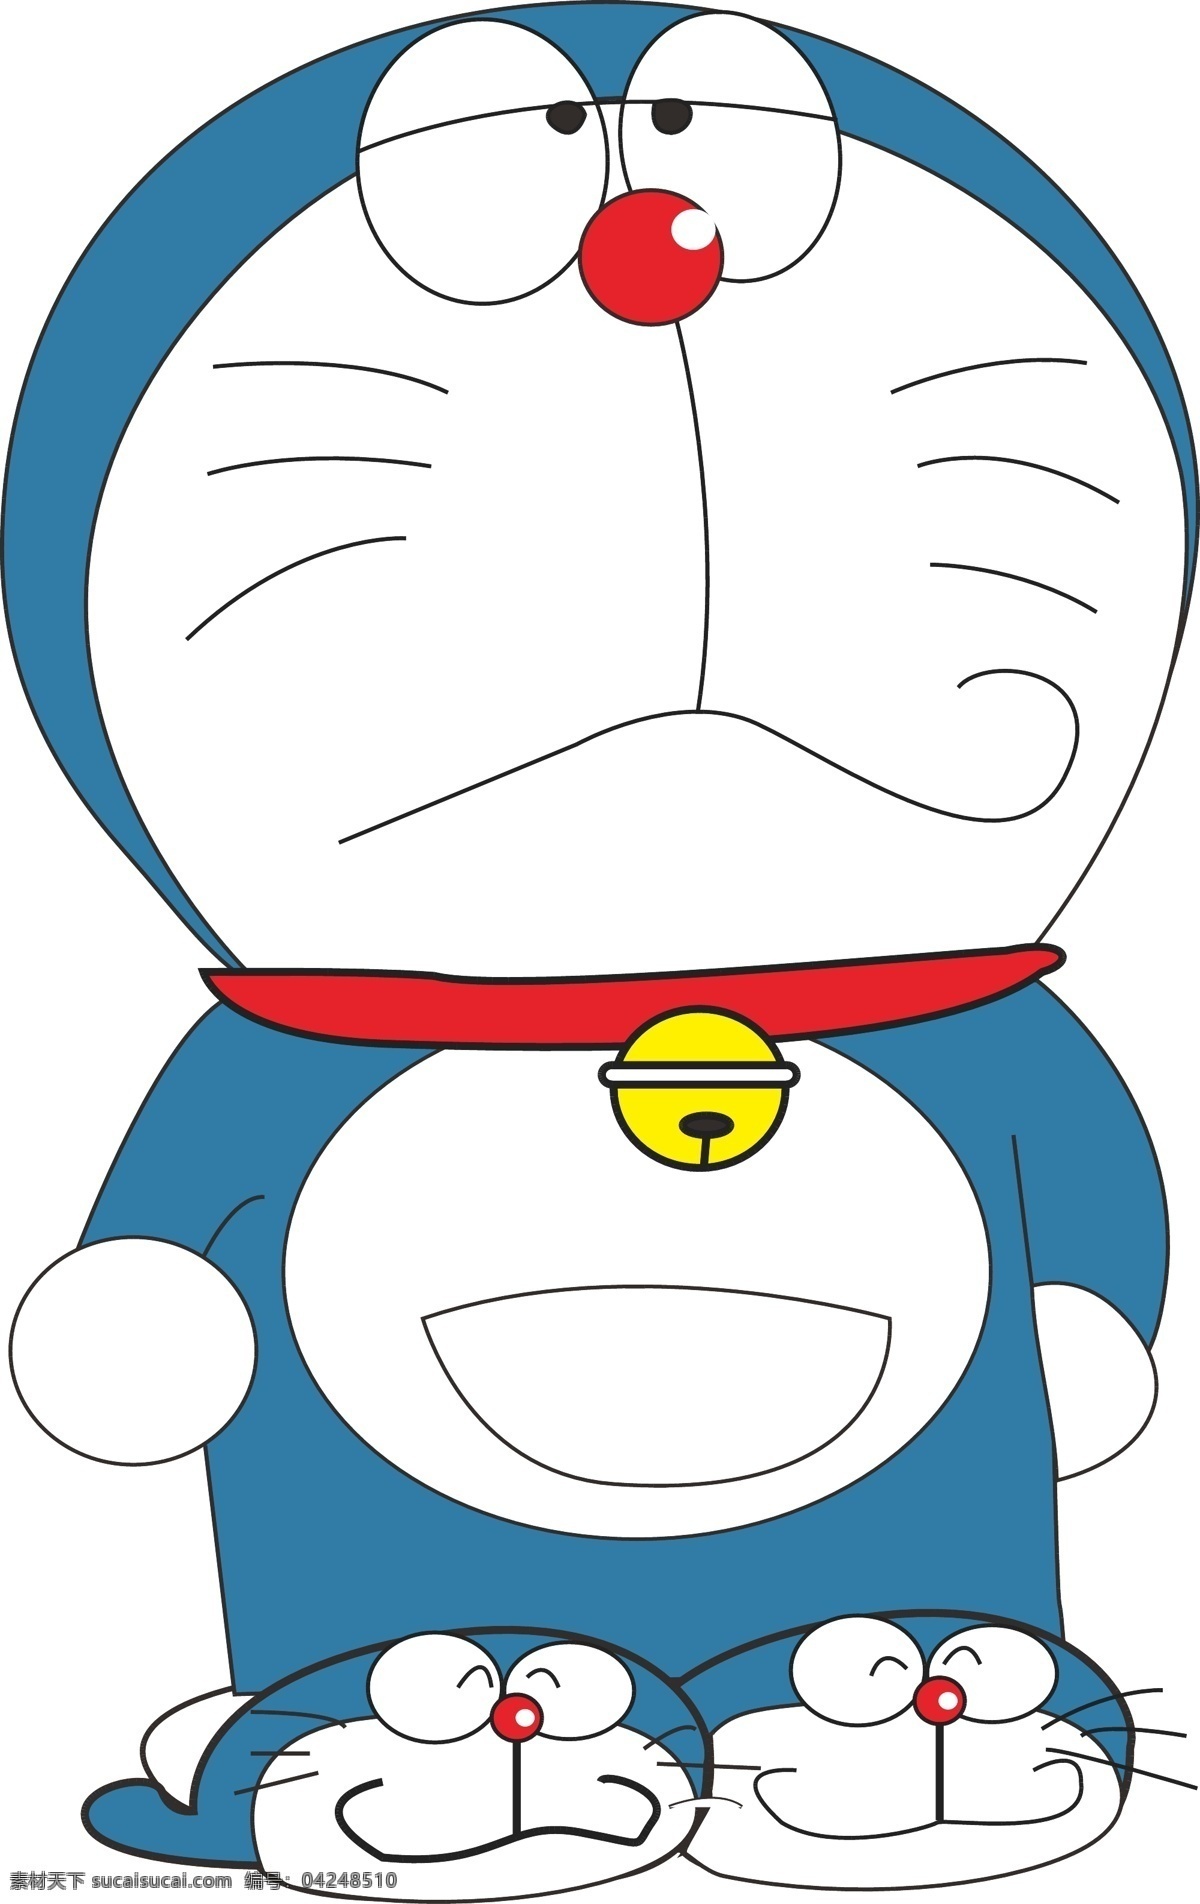 哆啦a梦 蓝胖子 机器猫 小叮当 阿蒙 动漫动画 动漫人物